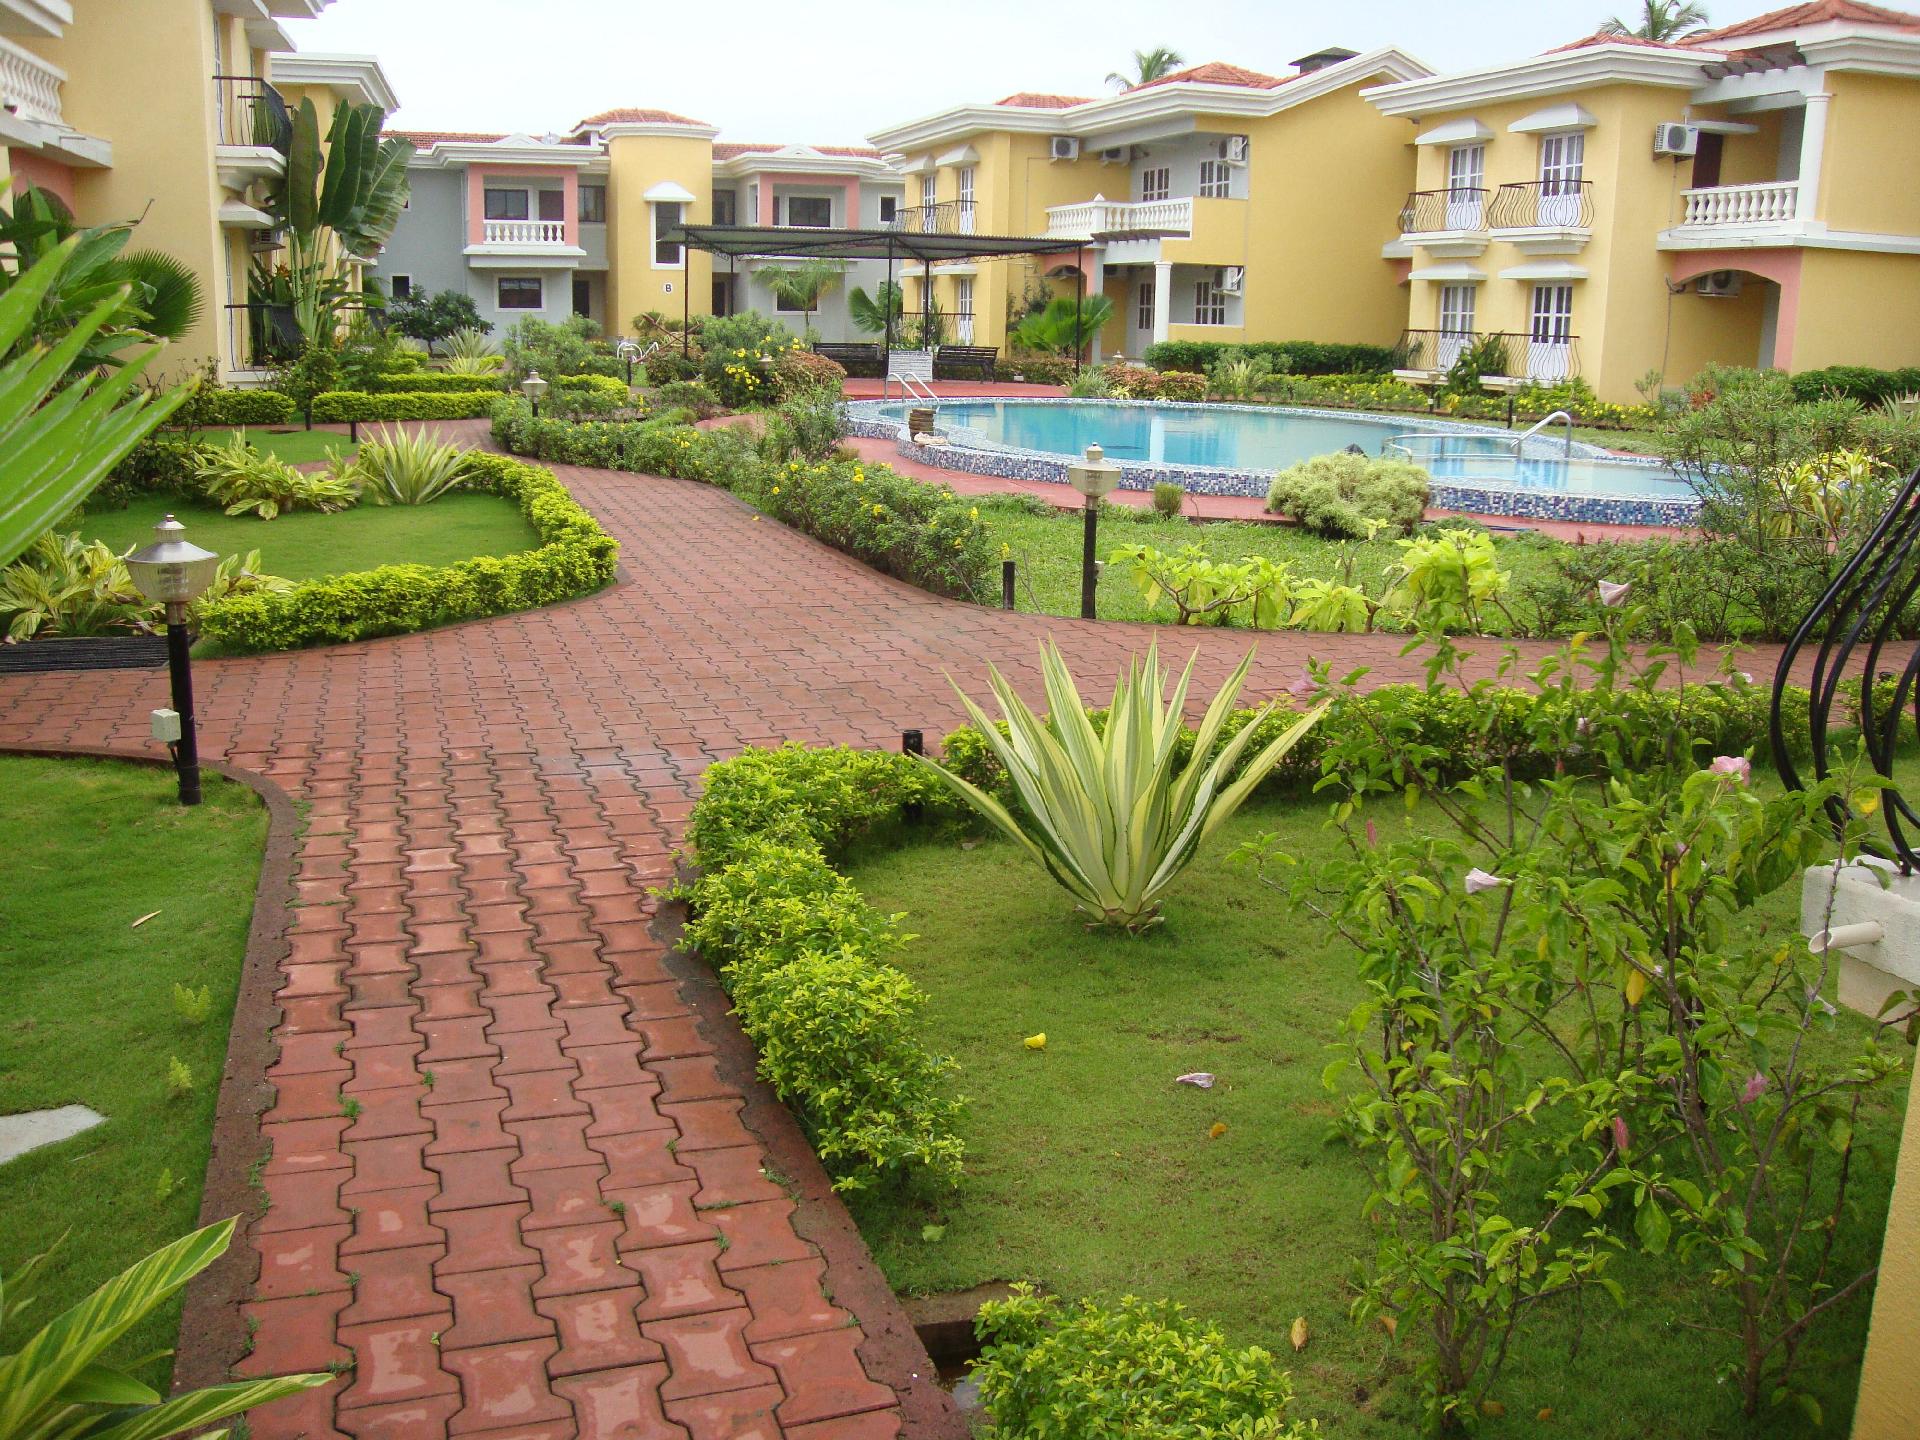 Ferienwohnung für 4 Personen ca. 96 m² i Ferienwohnung in Indien